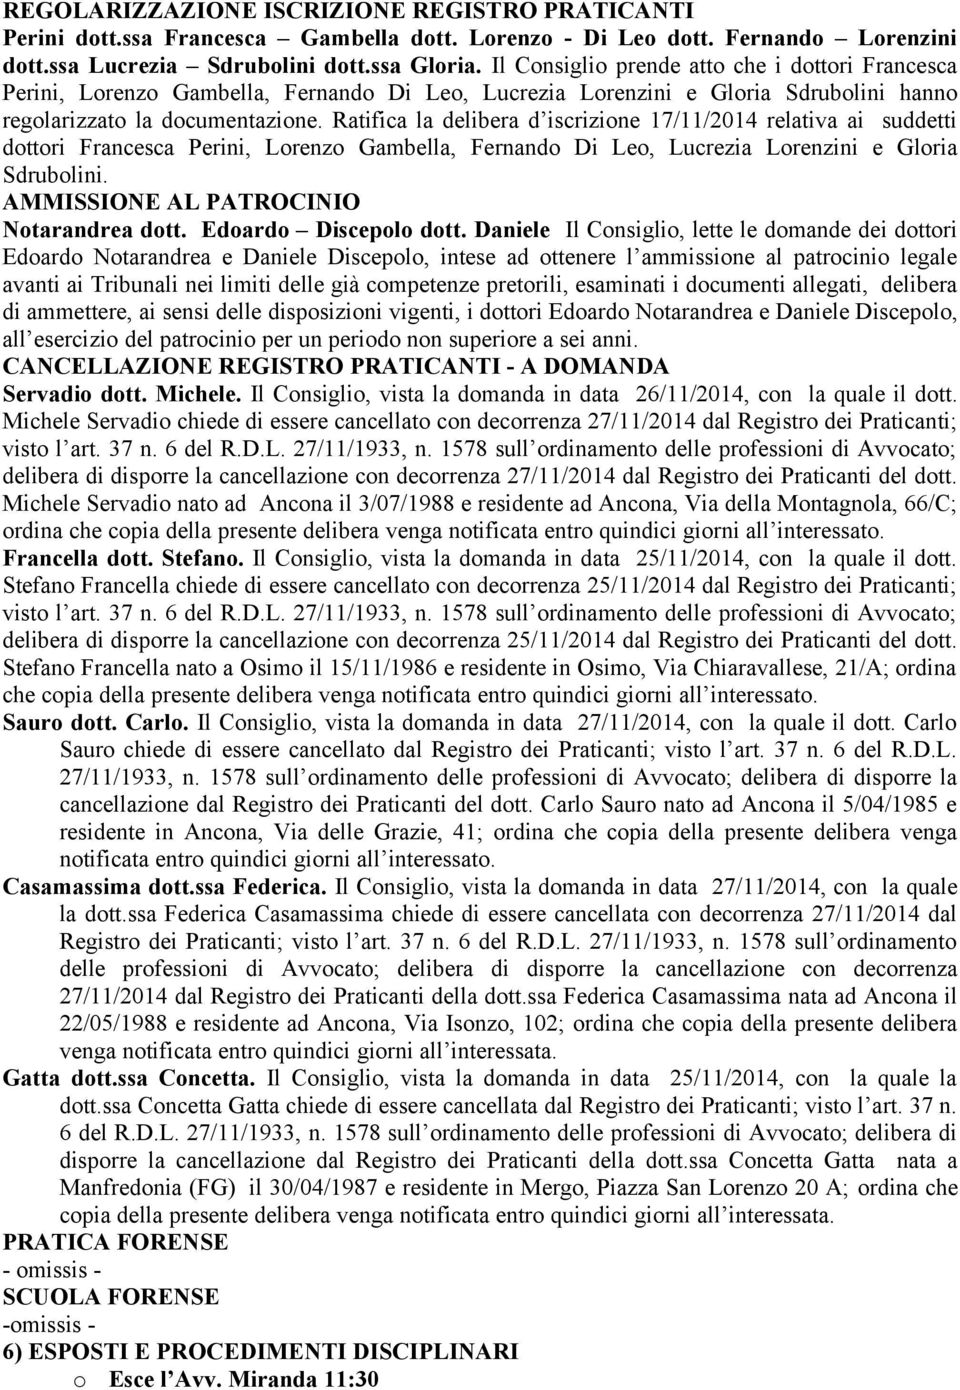 Ratifica la delibera d iscrizione 17/11/2014 relativa ai suddetti dottori Francesca Perini, Lorenzo Gambella, Fernando Di Leo, Lucrezia Lorenzini e Gloria Sdrubolini.